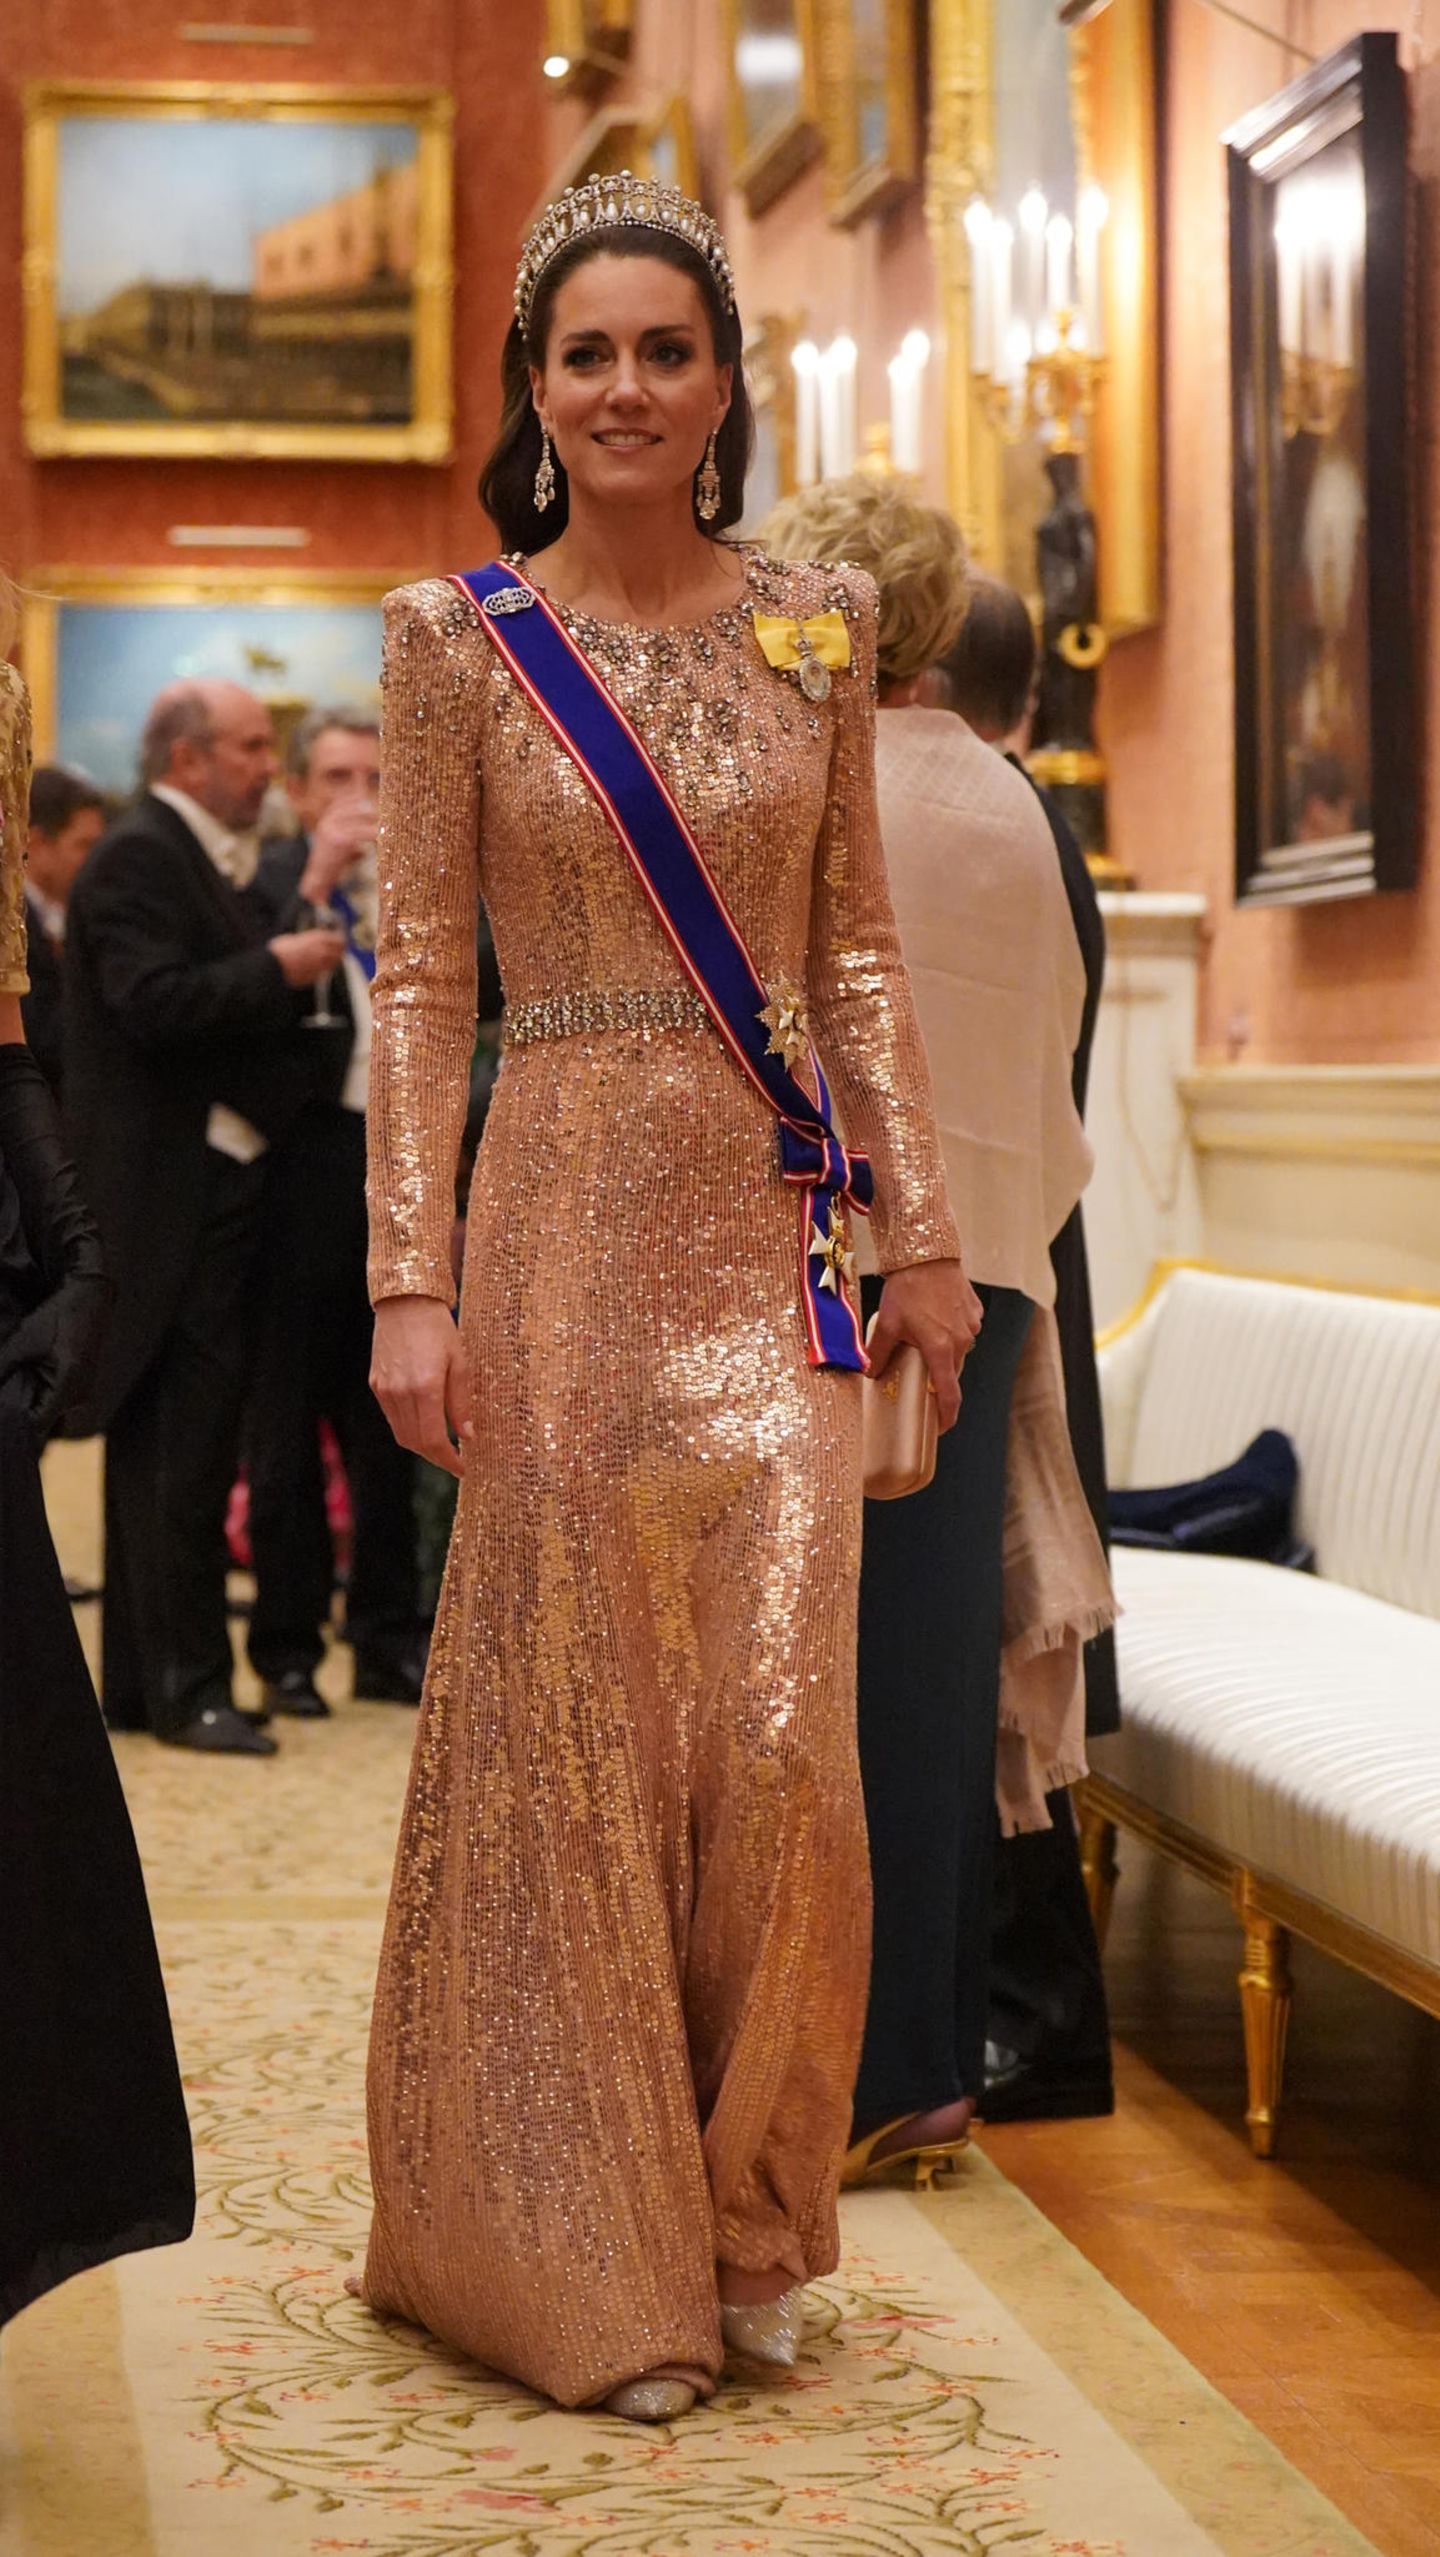 Beim Empfang für das Diplomatische Corps im Buckingham Palace strahlt Catherine, Prinzessin von Wales, mit ihrer Tiara um die Wette. Wie so oft entscheidet sich Kate für den festlichen Anlass für ein lachsfarbenes Paillettenkleid ihrer Lieblingsdesignerin Jenny Packham, das gleiche Kleid, das sie bei der Hochzeit von Kronprinz Hussein von Jordanien im Juni dieses Jahres trug. Doch für Kate ist ein Eye-Catcher nicht genug. Sie begeistert nicht nur mit eleganten Diamantohrringen, sondern auch ihre Schuhe funkeln majestätisch vor sich hin.